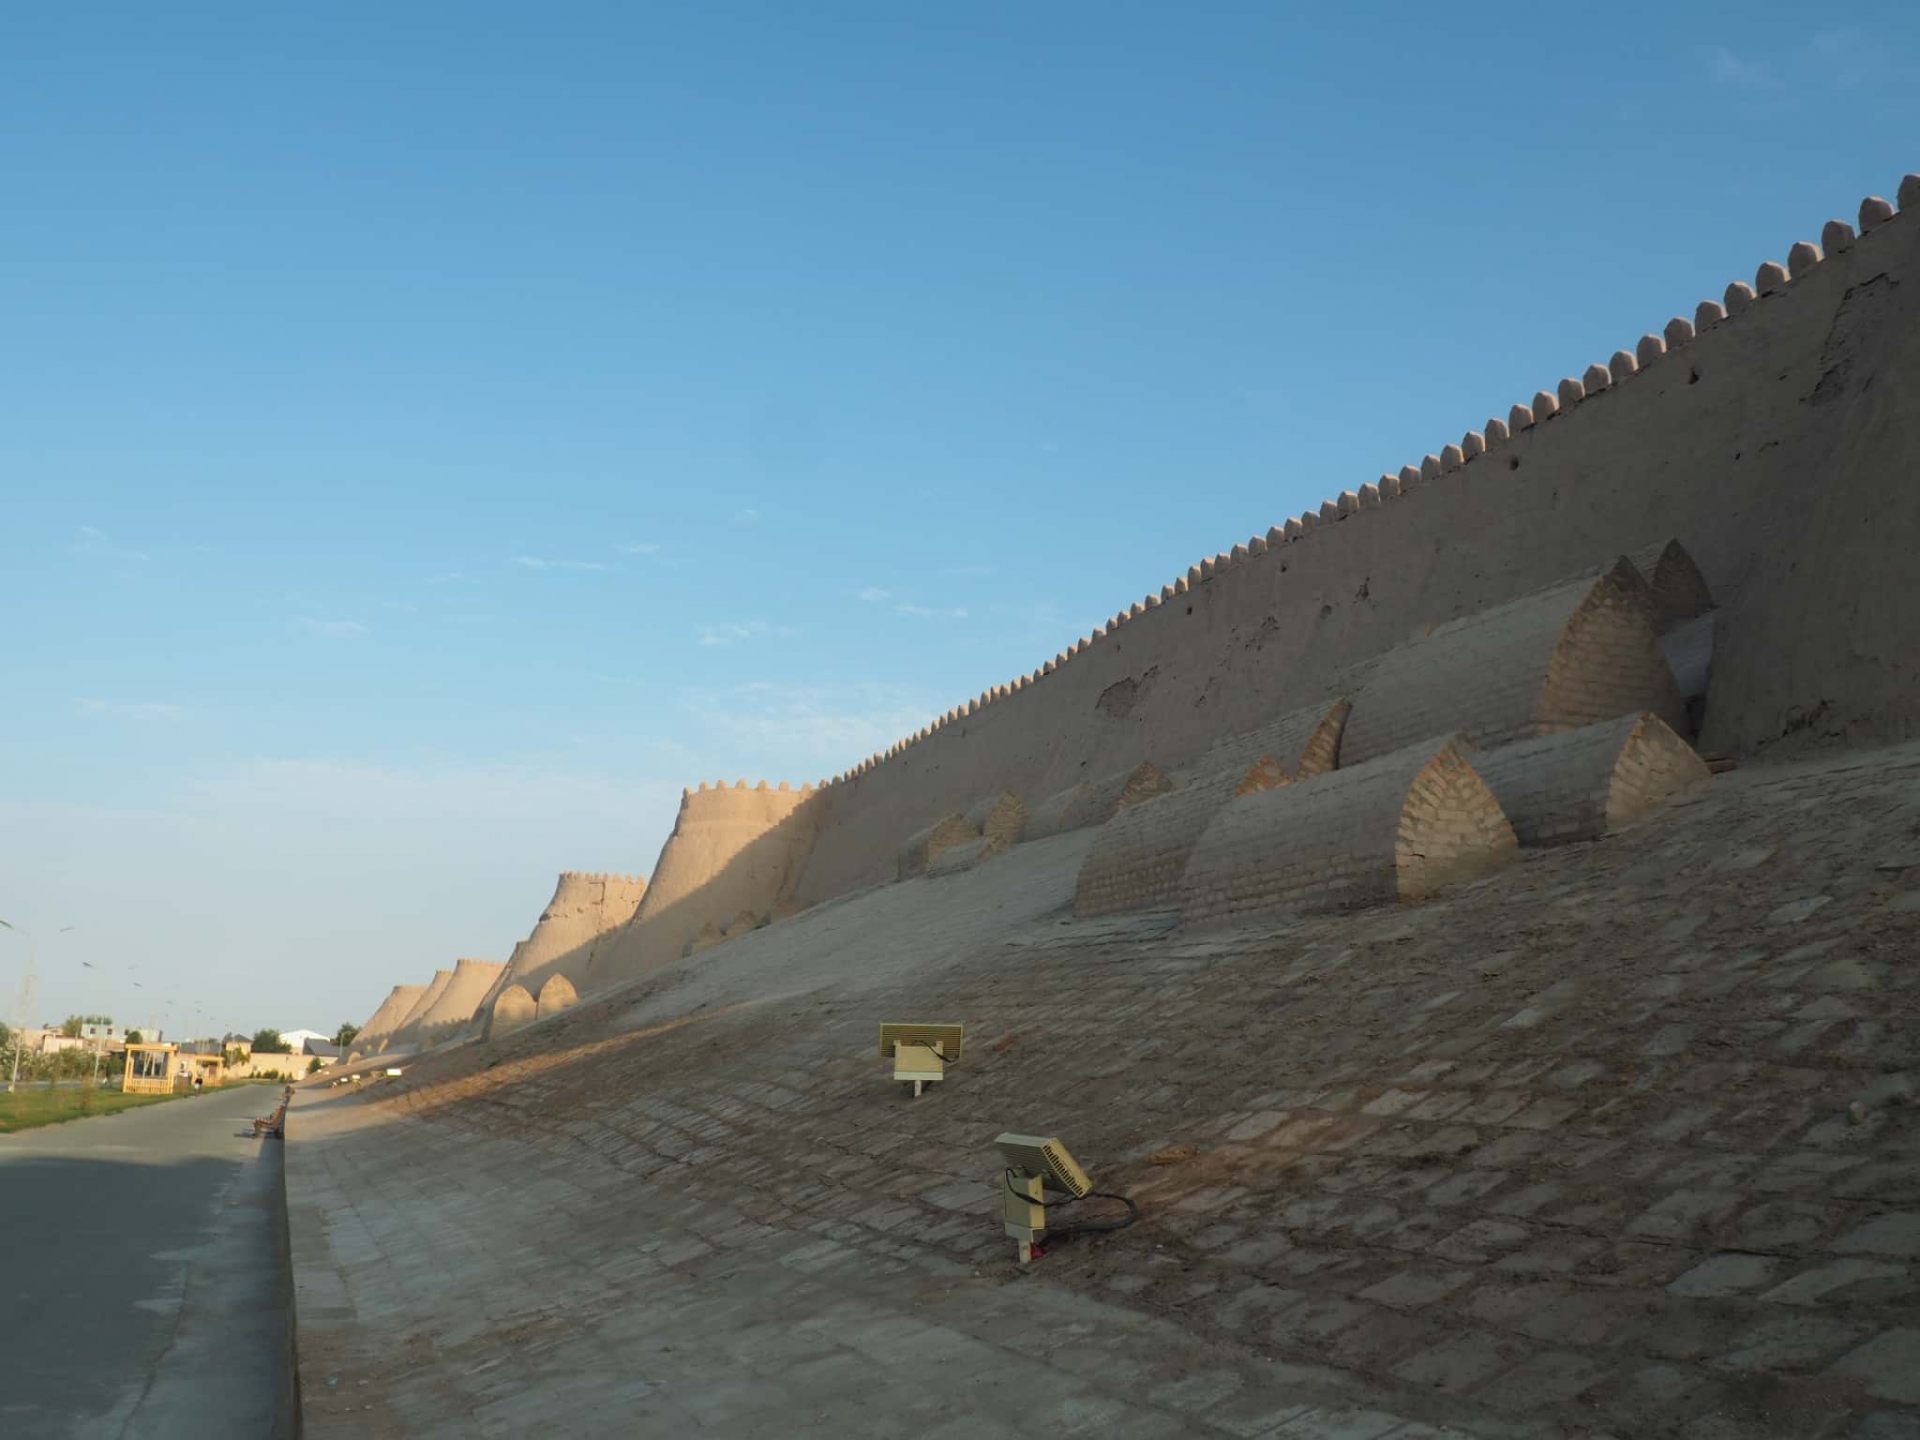 イチャン・カラ南側の城壁。かつては城壁内に死者を埋葬する風習があり、現在も当時の墓が残る